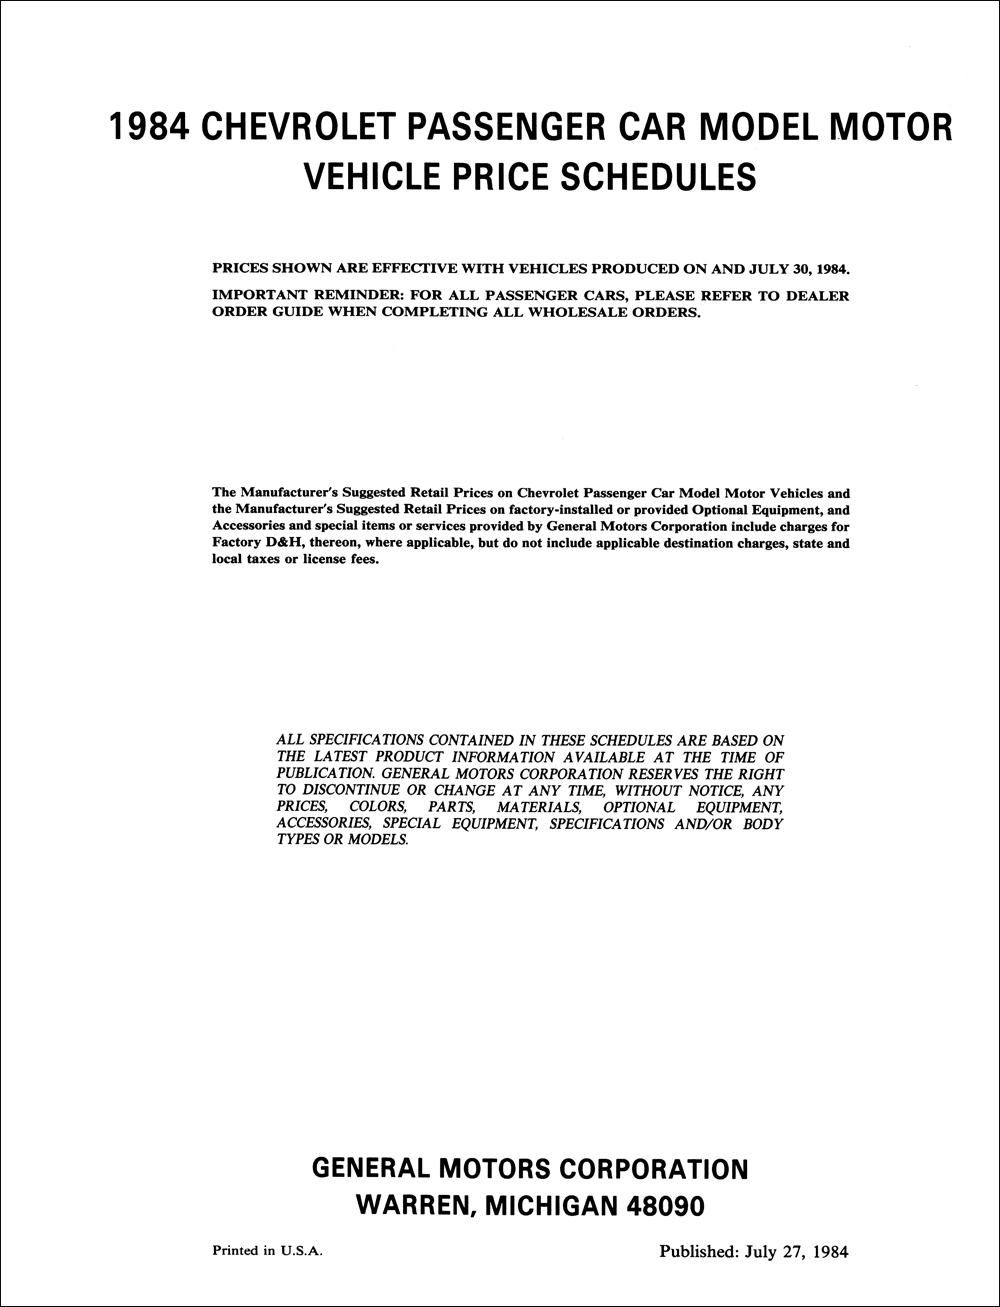 1984 Chevrolet Price Schedule Dealer Album Original 